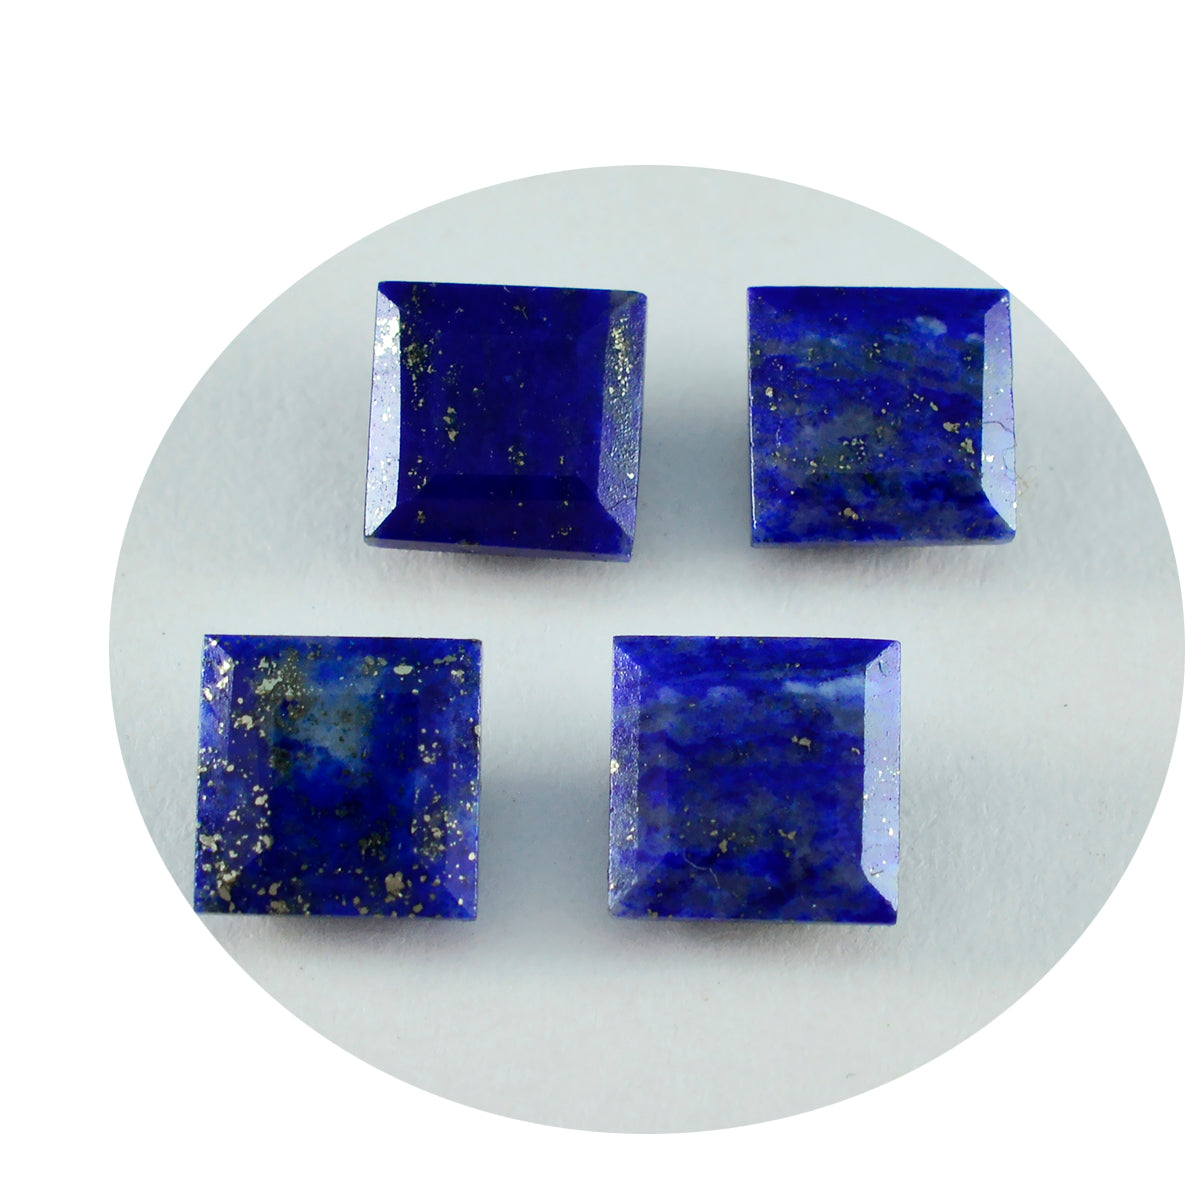 Riyogems 1 pièce de lapis-lazuli bleu véritable à facettes 9x9 mm forme carrée pierre précieuse de qualité étonnante